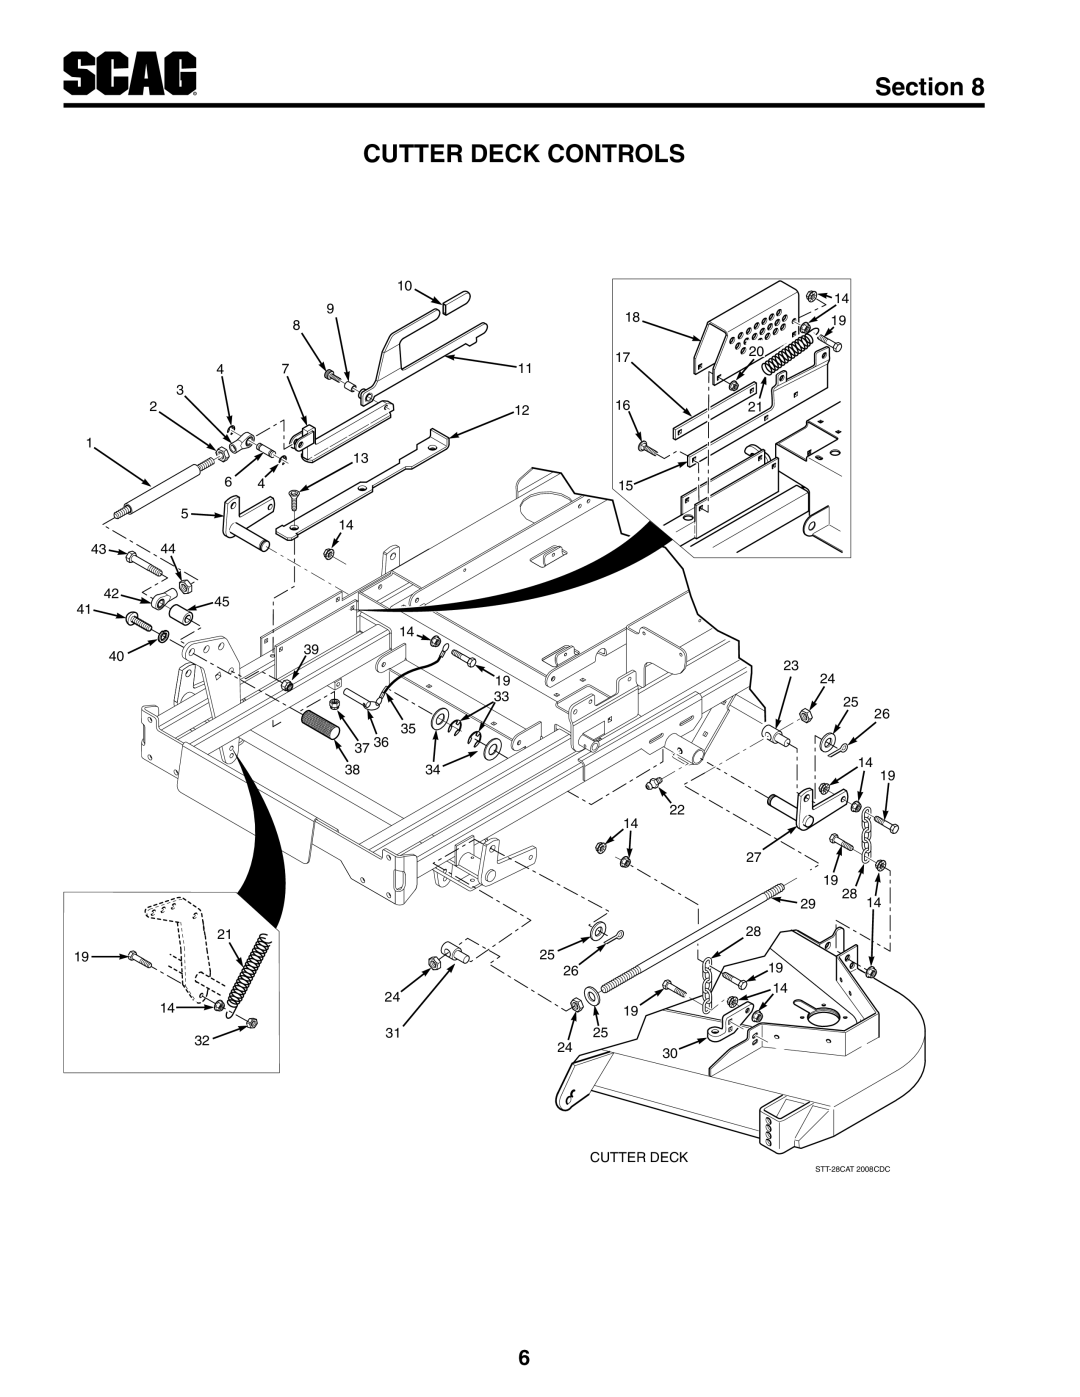 Scag Power Equipment STT-25CH-LP manual Cutter Deck Controls, Section 